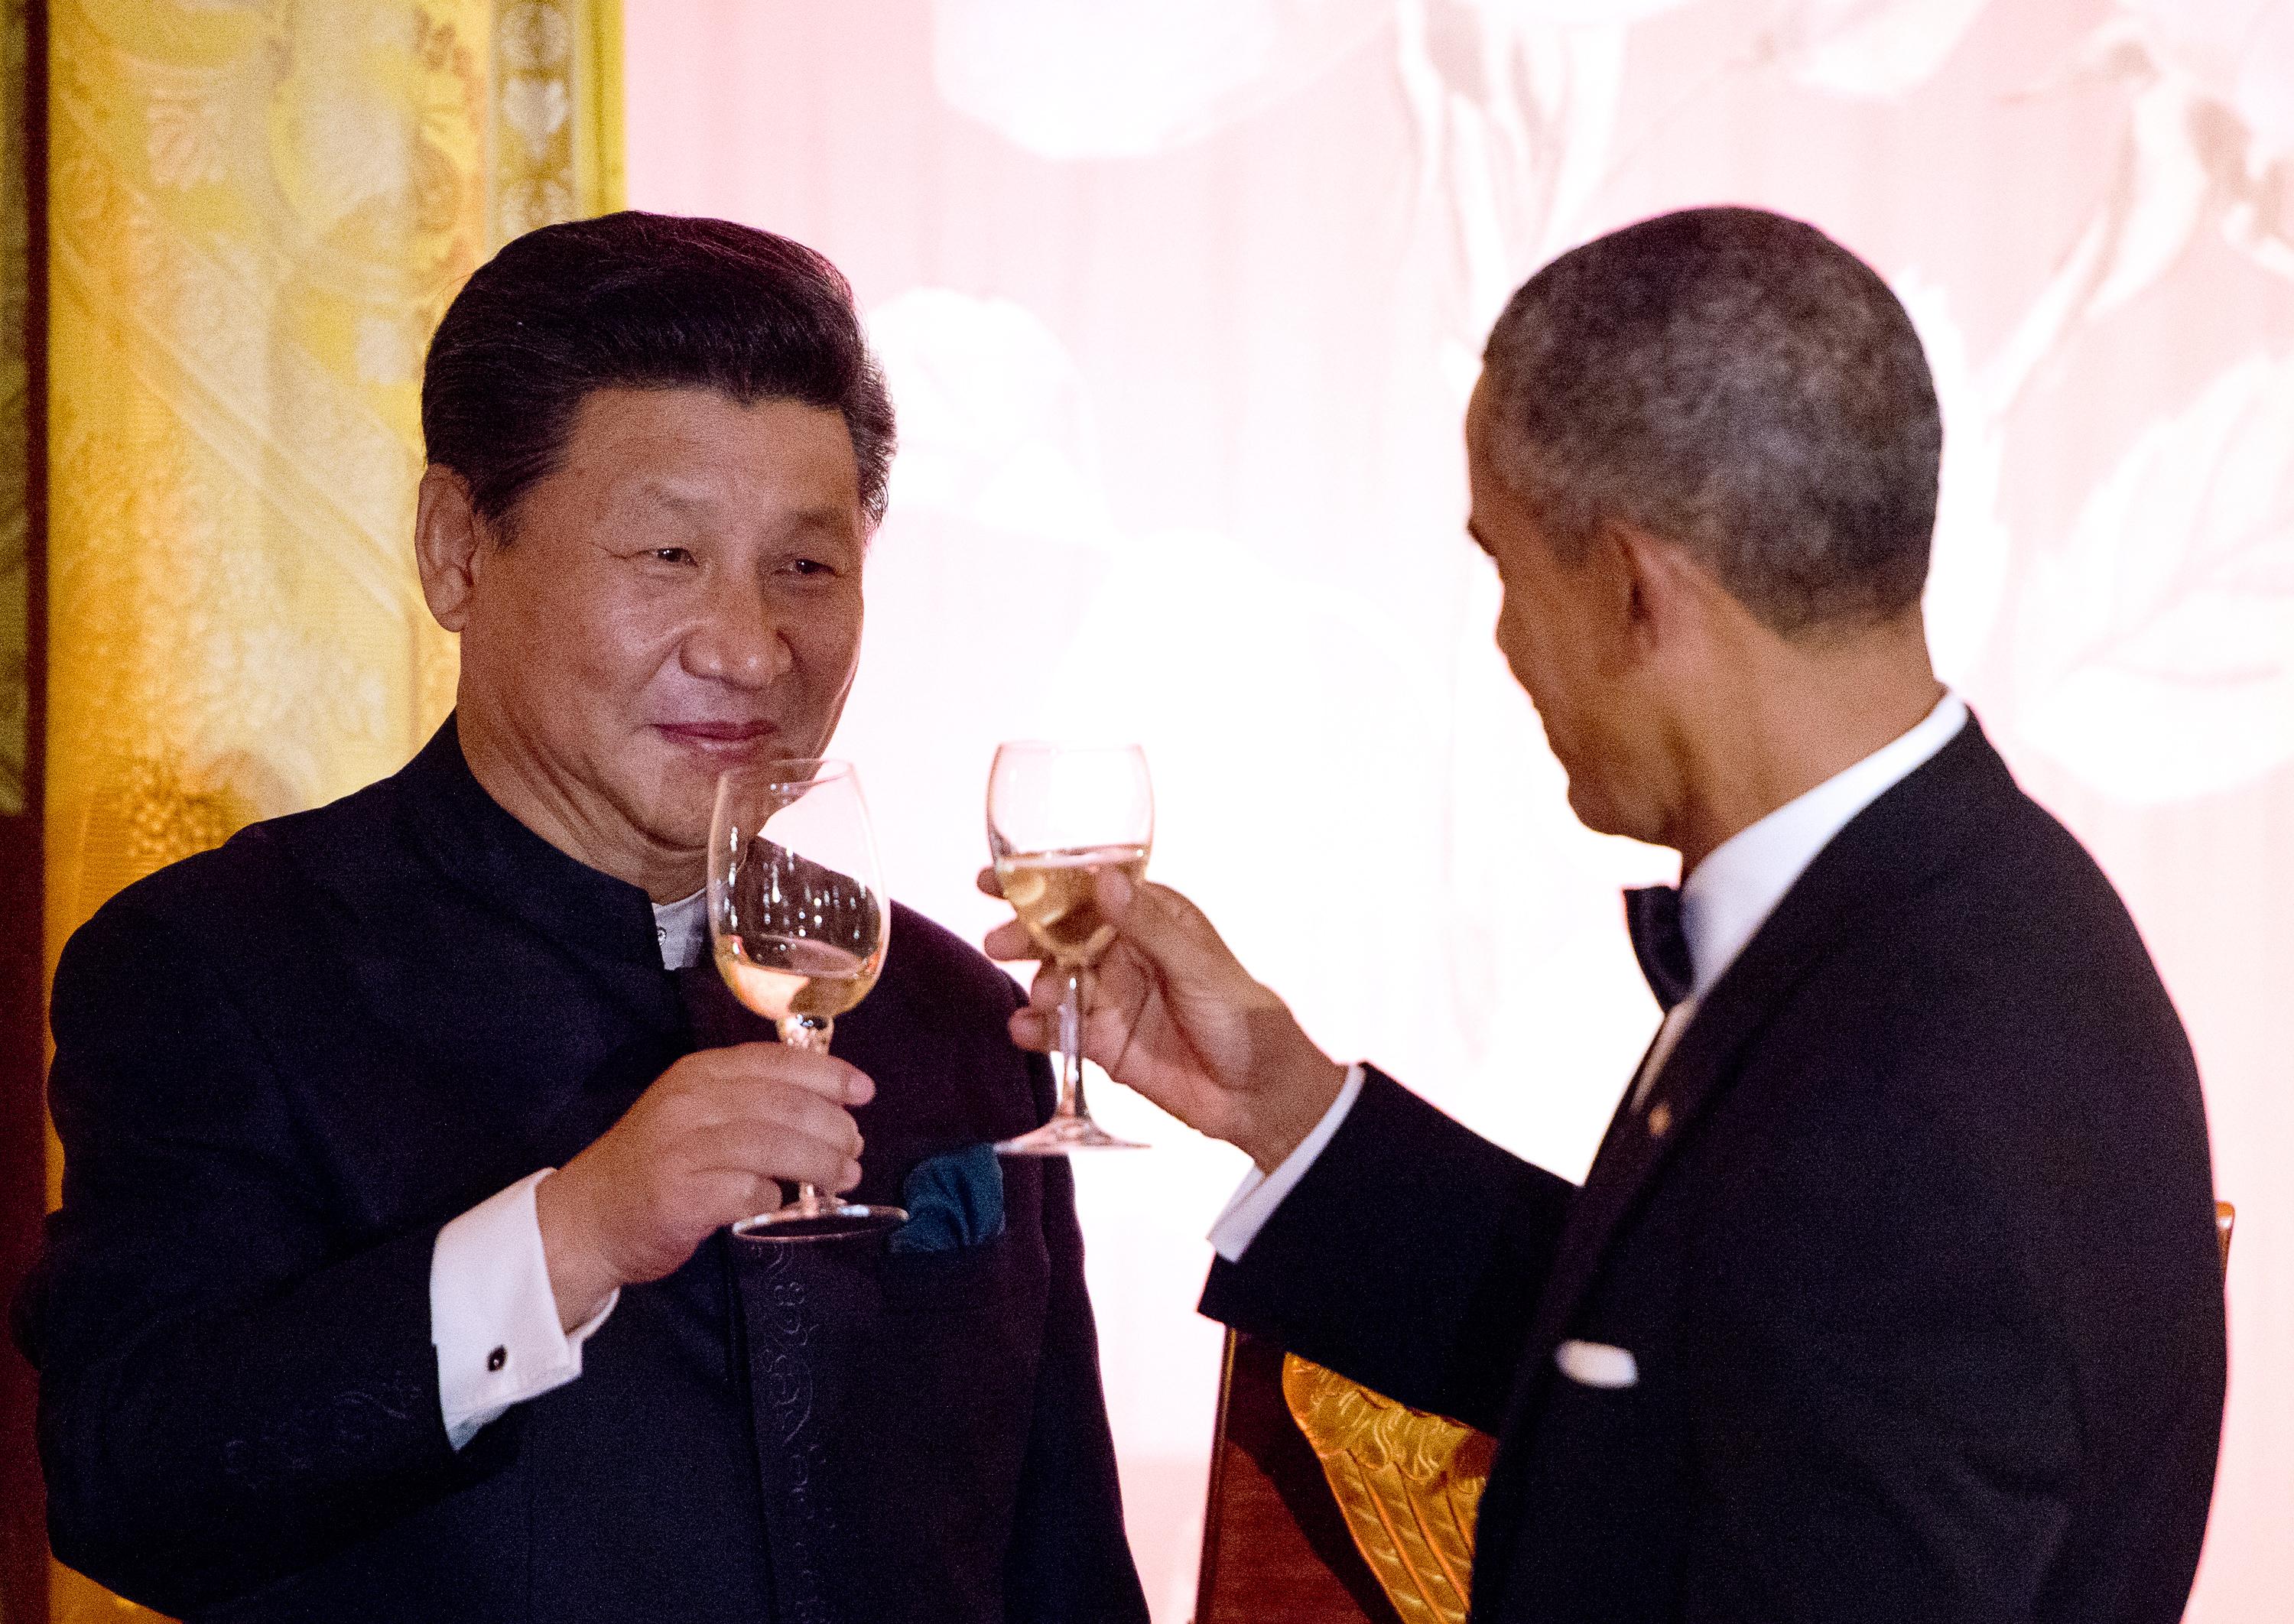 Kinesiska kommunistpartiets ledare Xi Jinping skålar med USA:s president Barack Obama under statsbanketten på Vita huset dem 25 september 2015. Kina kopplar nu greppet på USA och resten av västvärlden för att bli en supermakt på riktigt. (Foto: Ron Sachs-Pool/Getty Images)